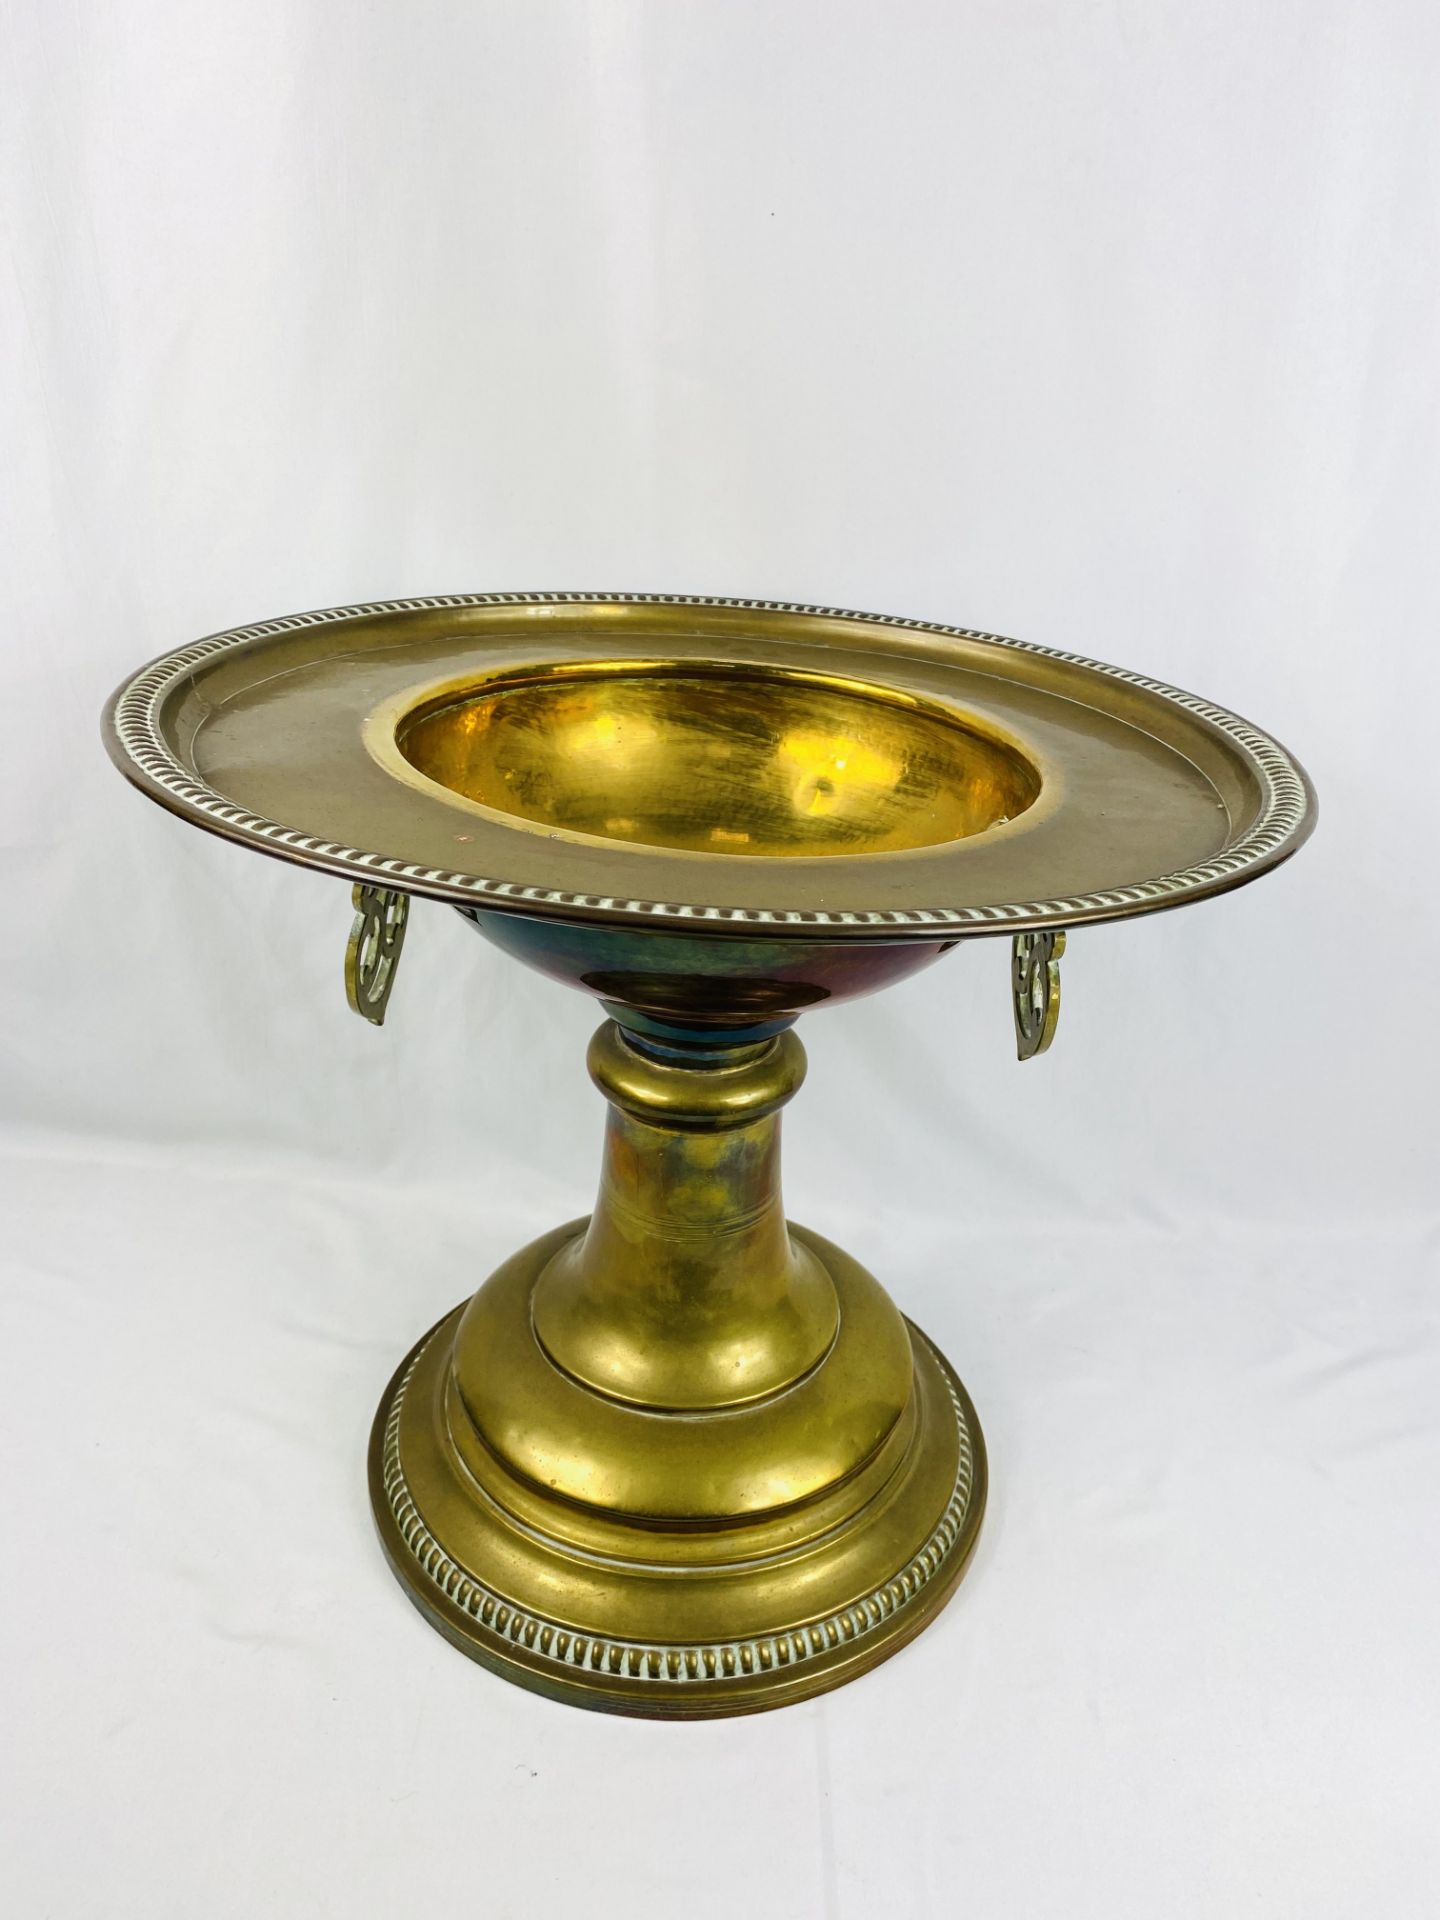 Middle Eastern brass incense burner - Image 4 of 4